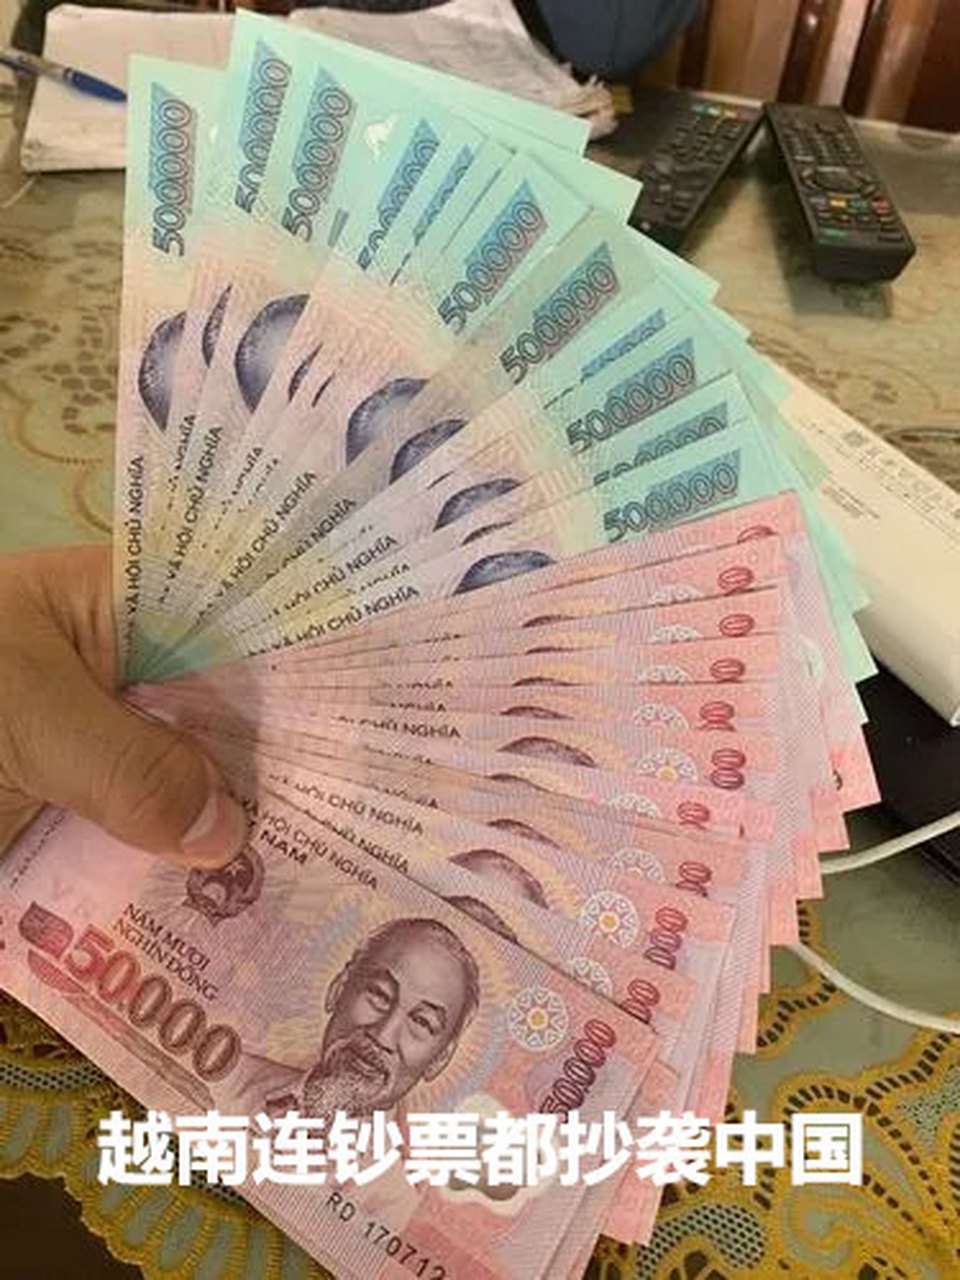 越南盾兑人民币不断升值,一博主称越南盾未来会比人民币更值钱,引发